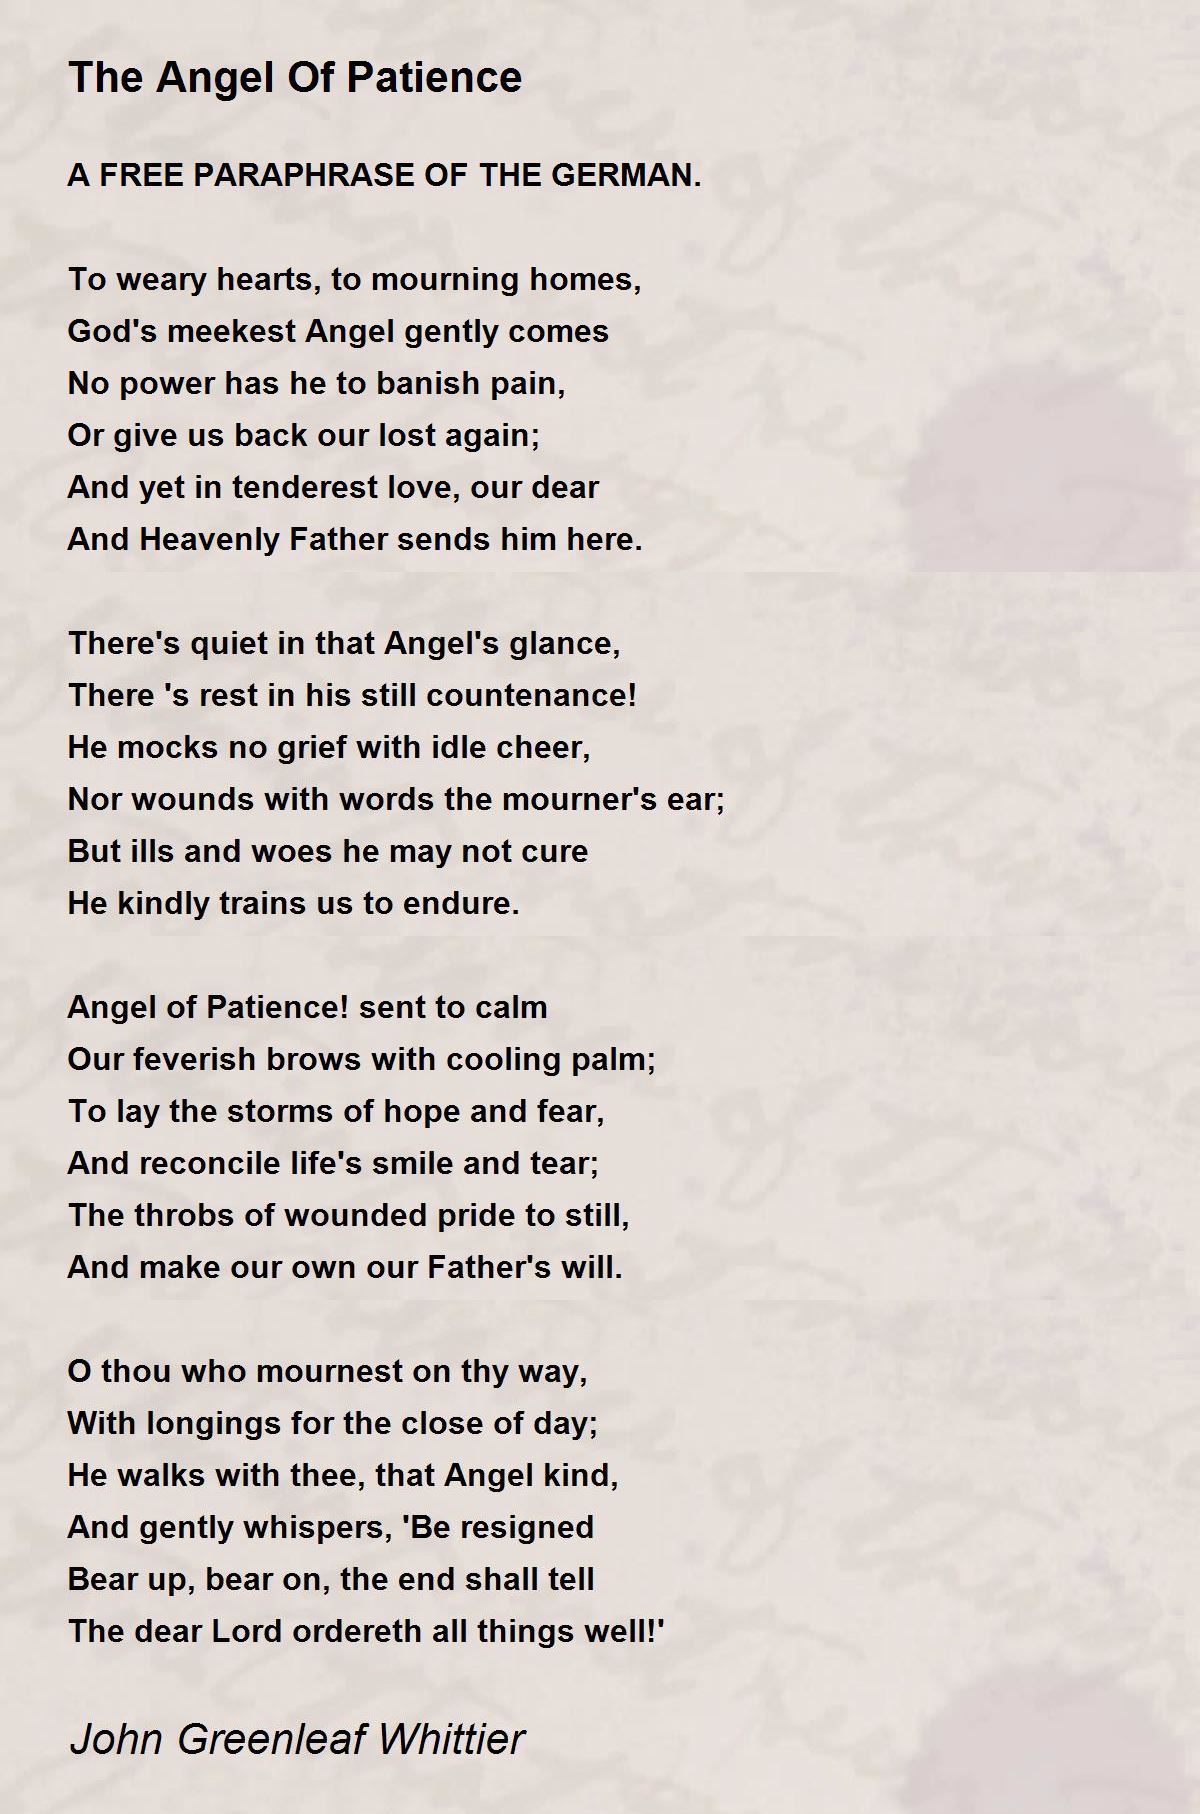 The Angel Of Patience Poem by John Greenleaf Whittier 